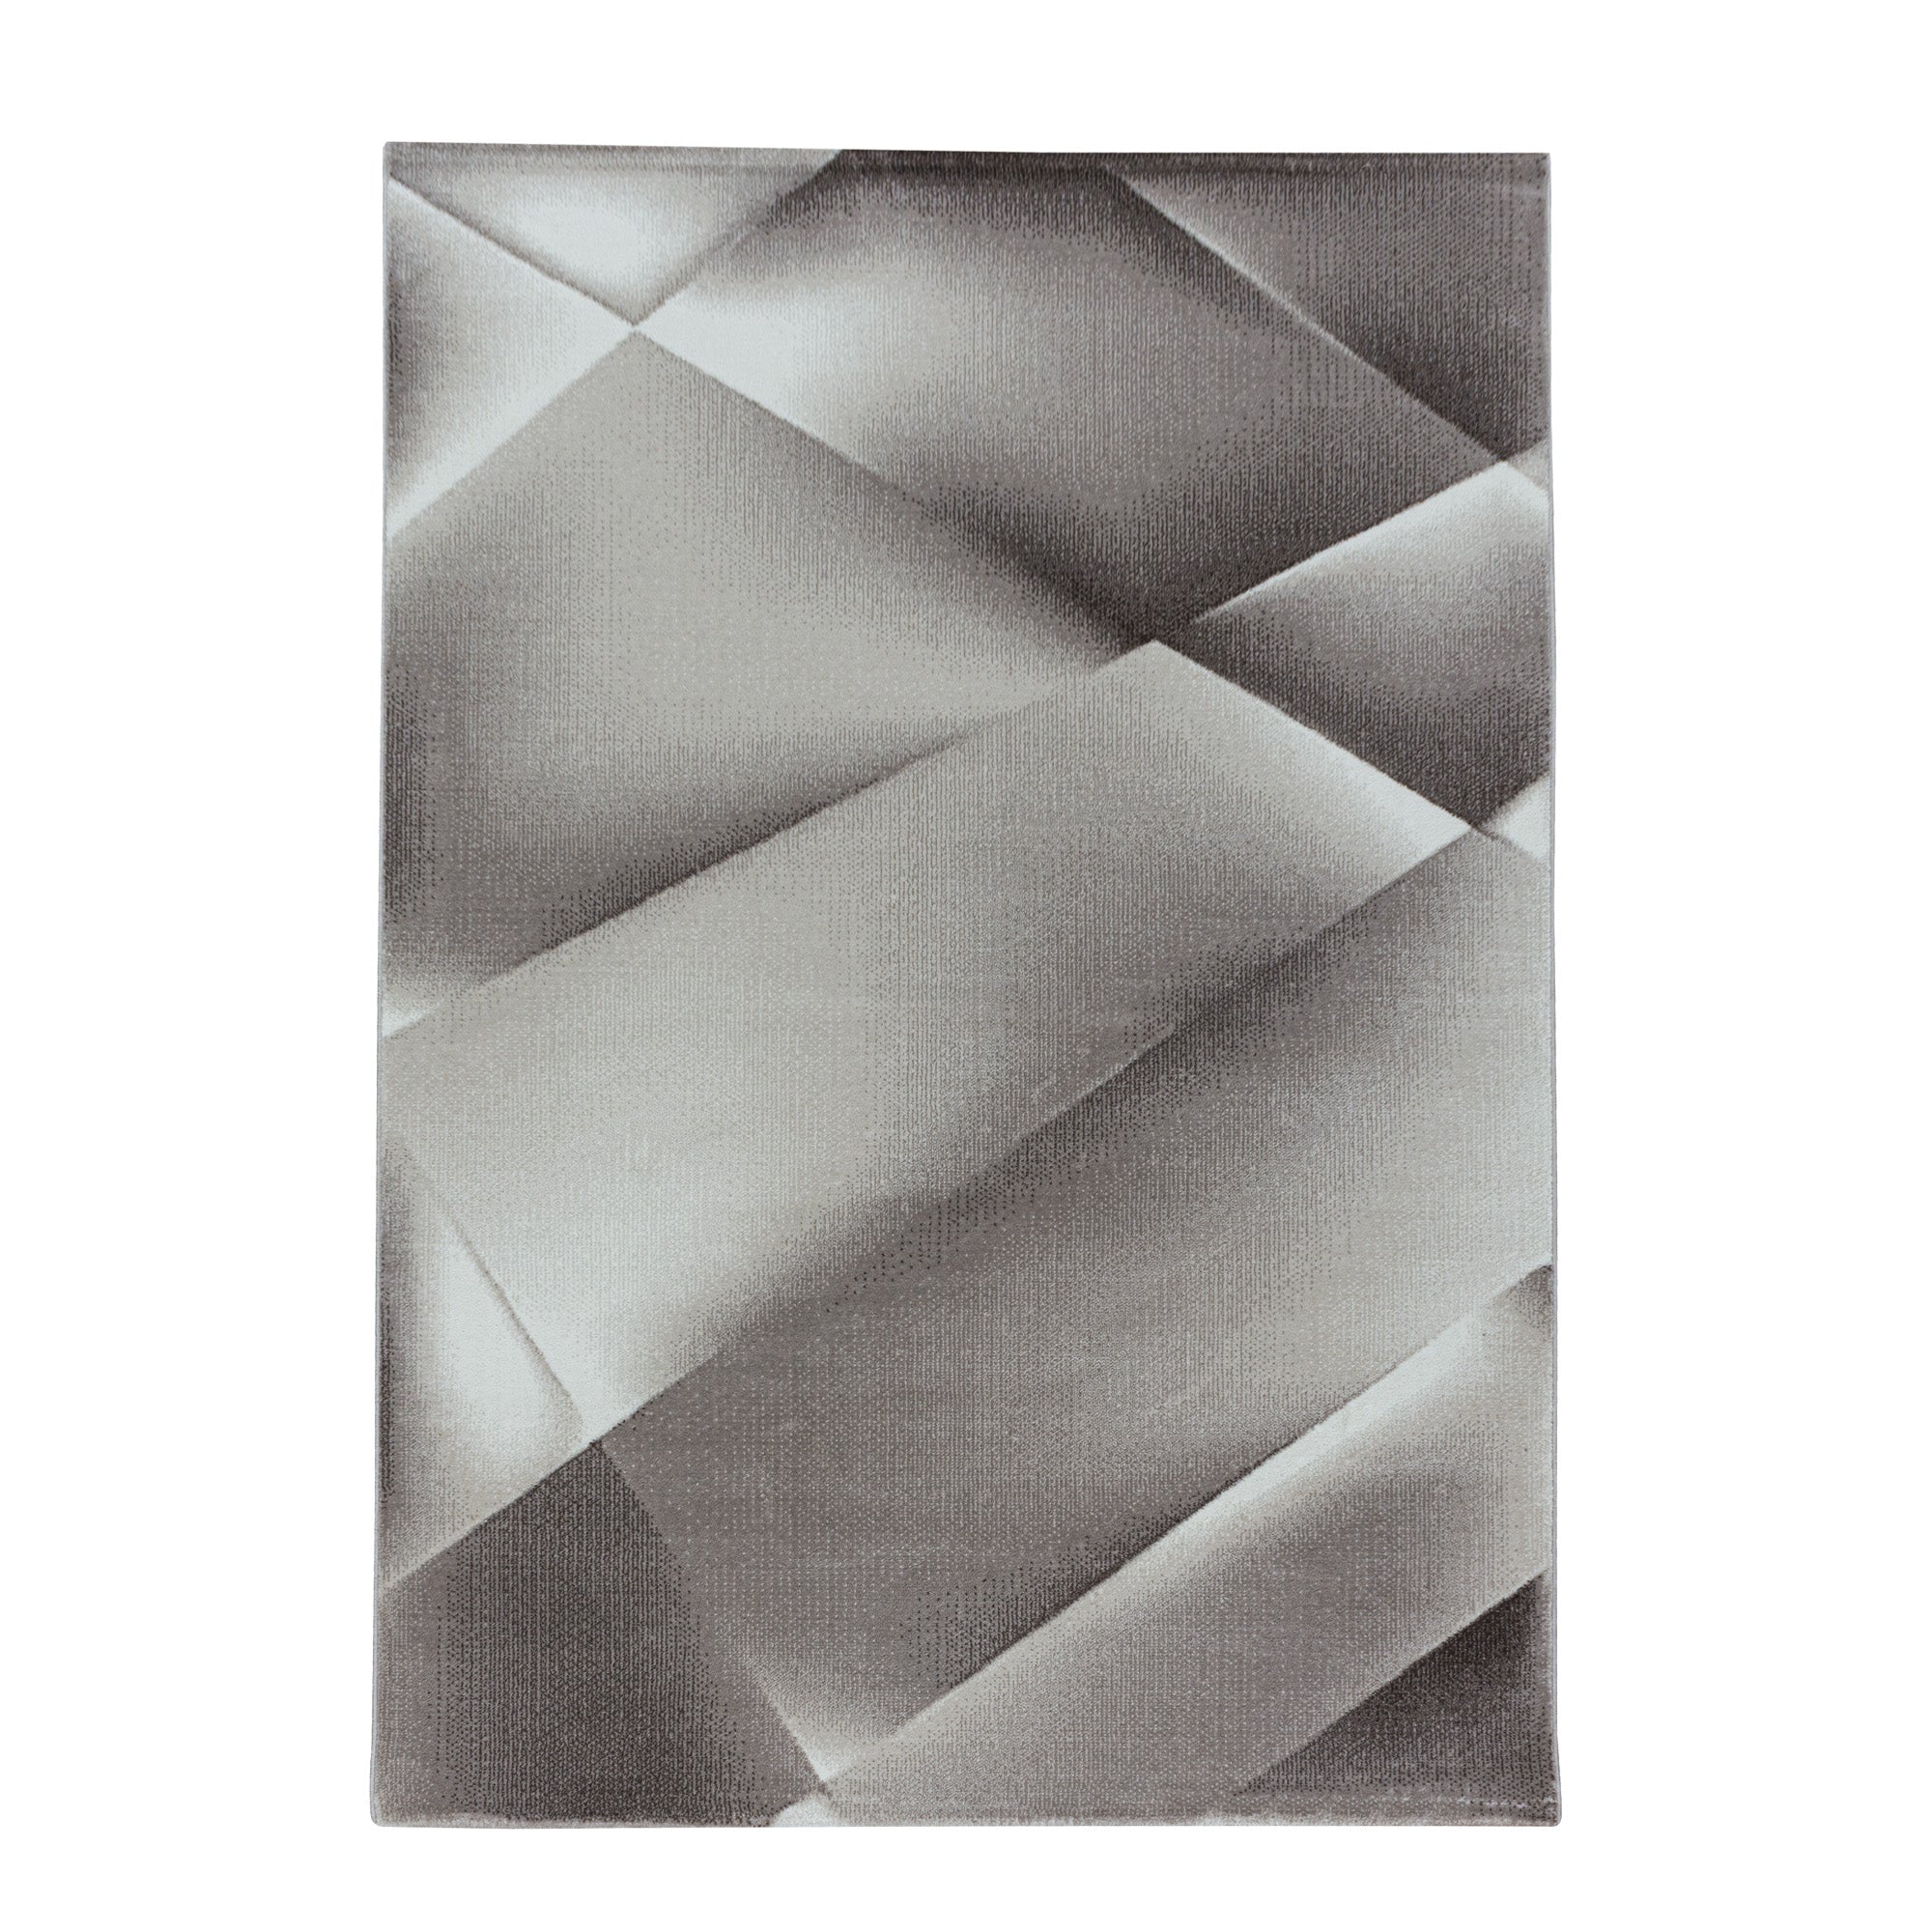 Weicher Kurzflor Teppich Wohnzimmerteppich Abstraktes Design Soft Flor Braun